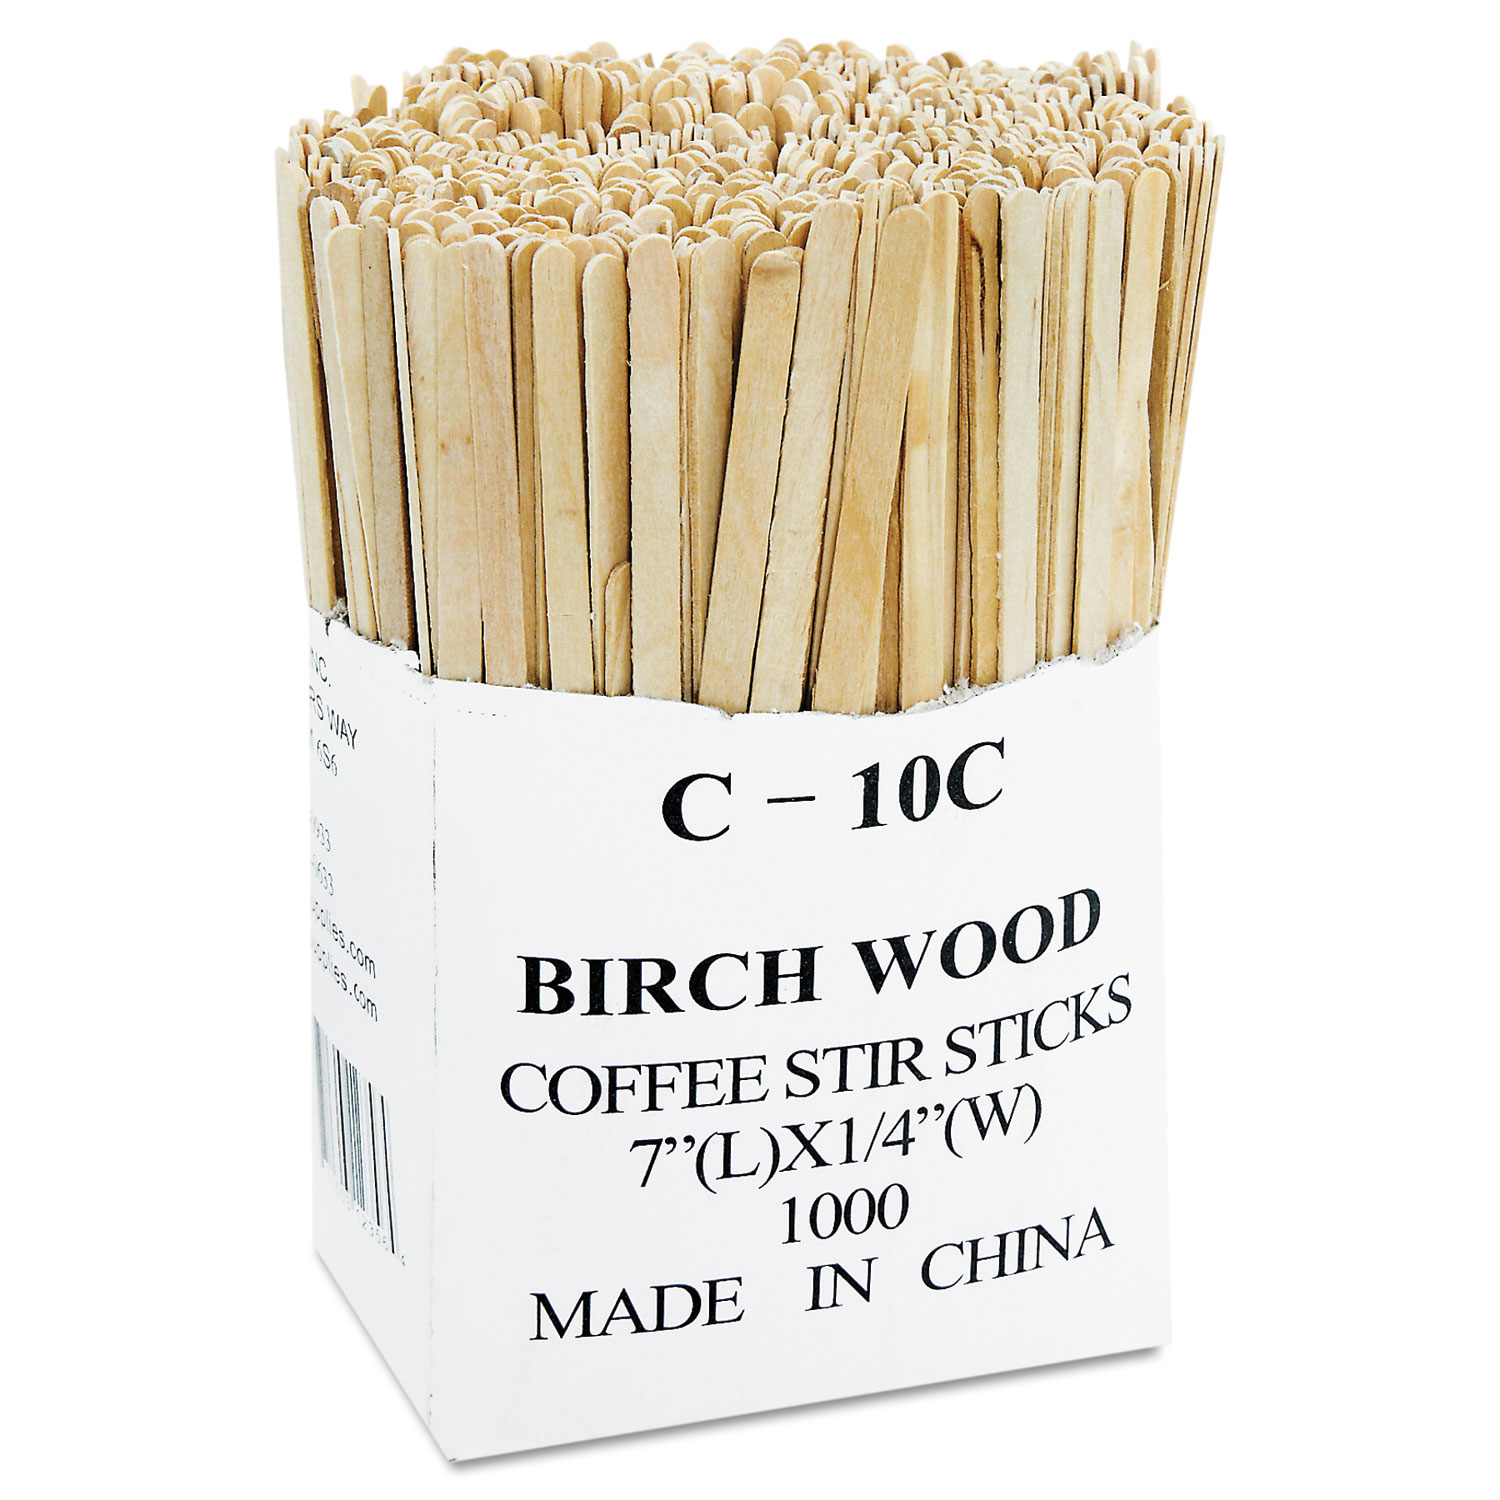 Renewable Wooden Stir Sticks - 7, 1000/PK, 10 PK/CT